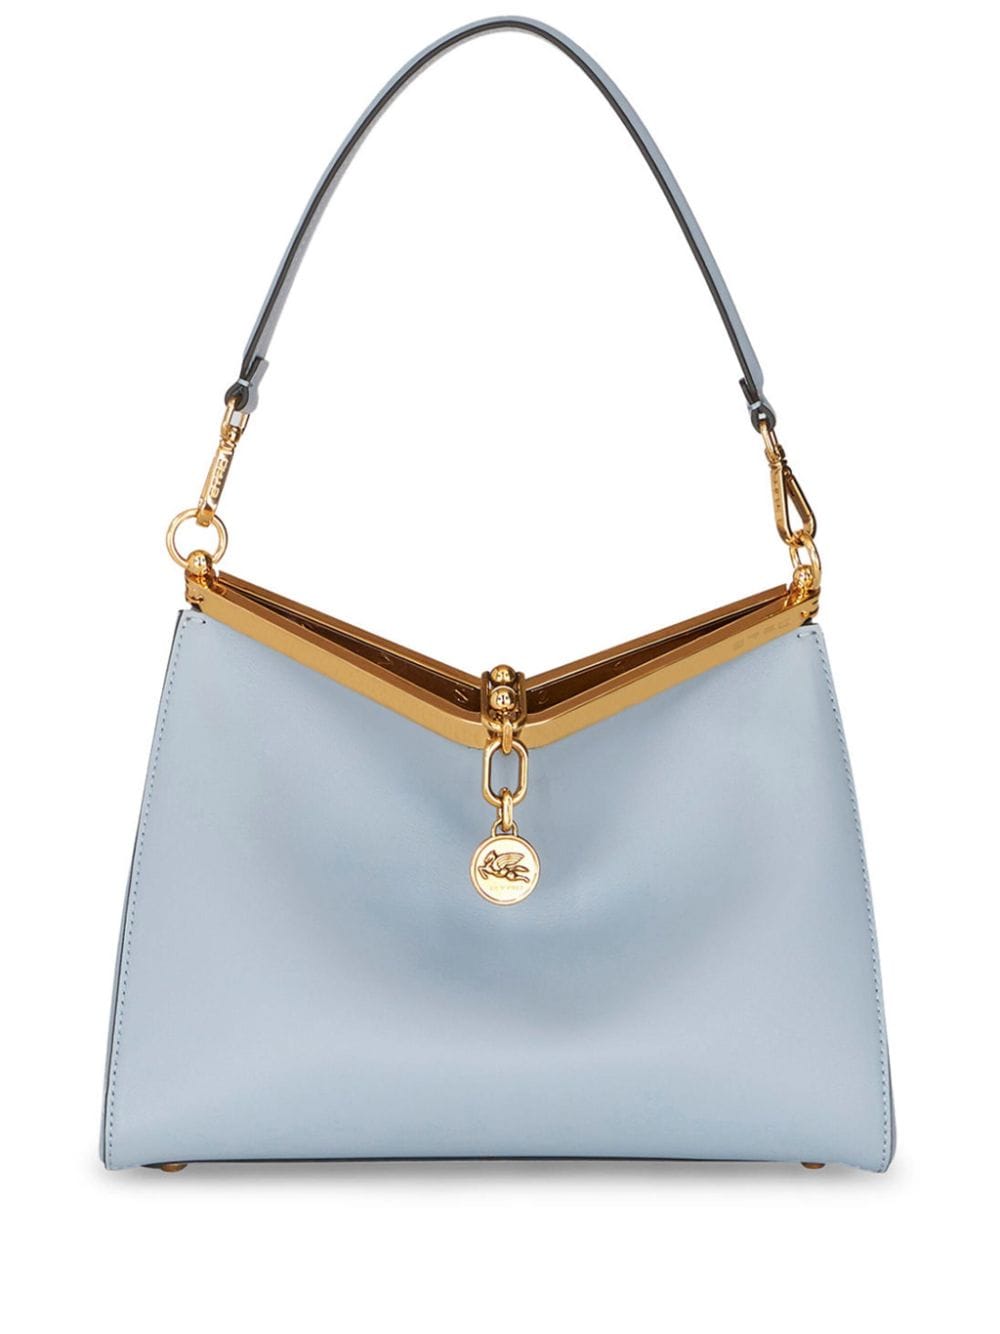 ETRO Luxurious Vela Leather &quot;Pegasus&quot; Shoulder Handbag - Sky Blue